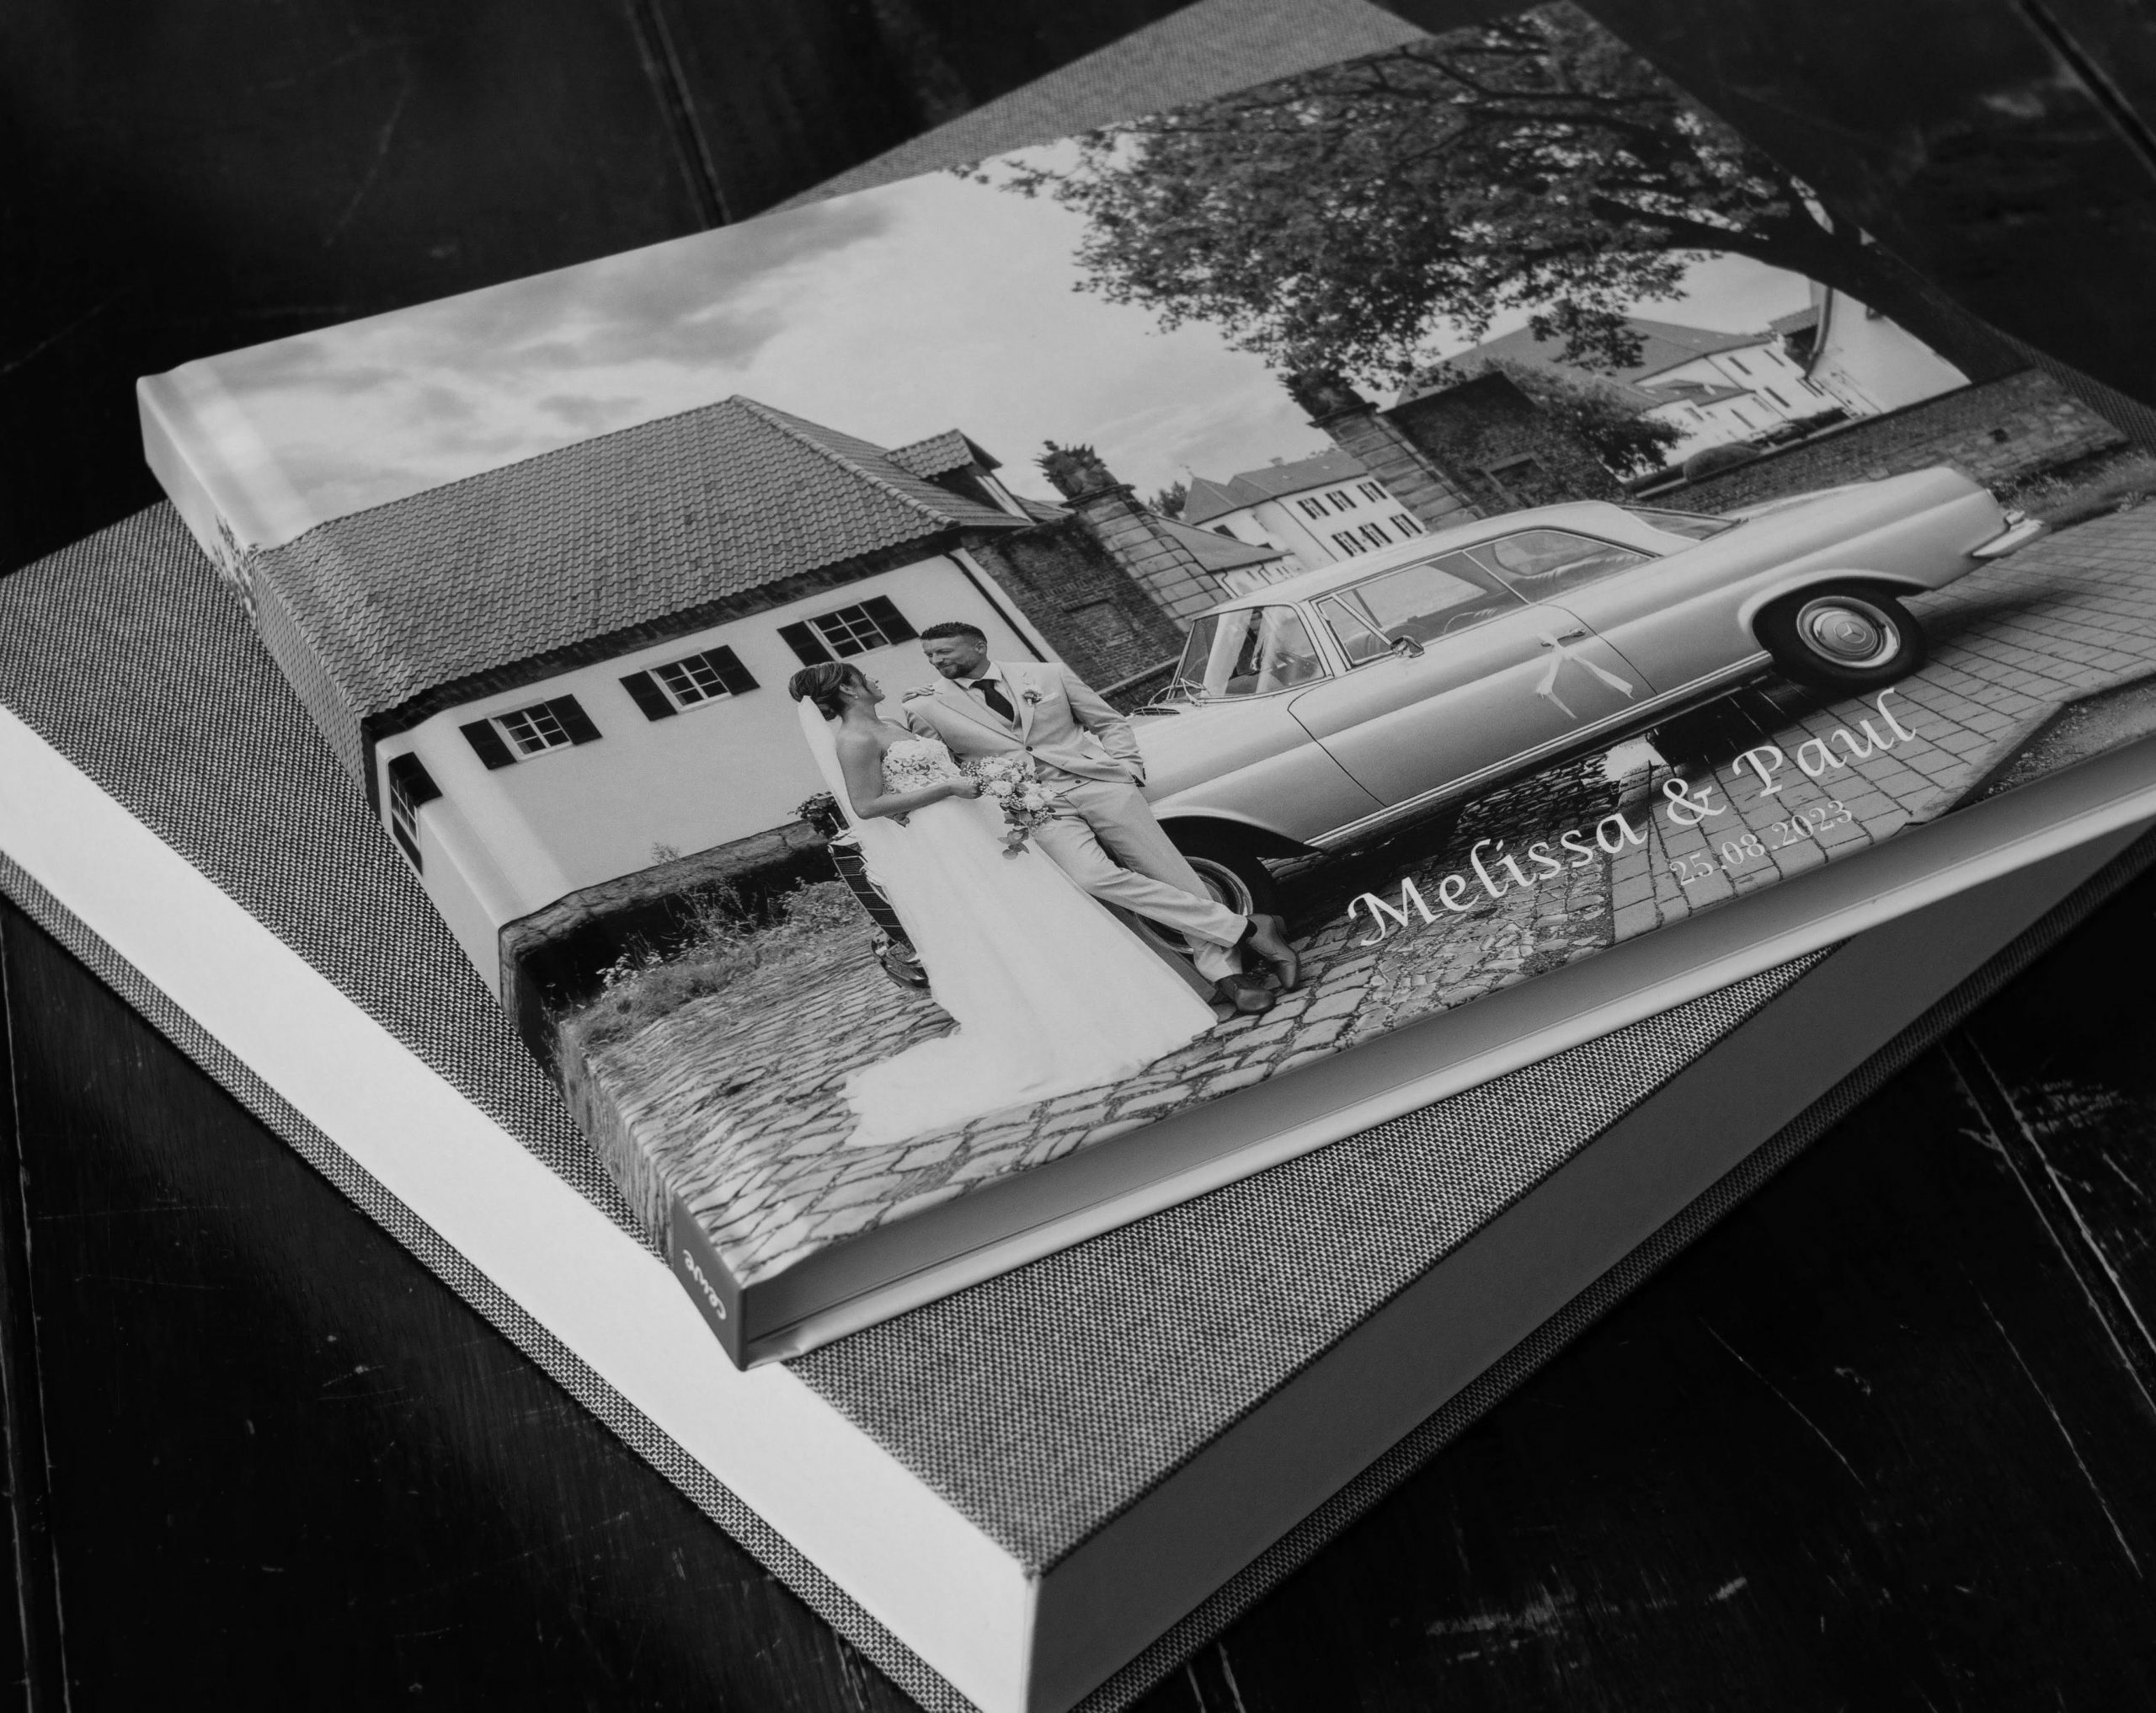 Fotobuch / Fotoalbum für ewige Erinnerungen an Ihre Hochzeit .